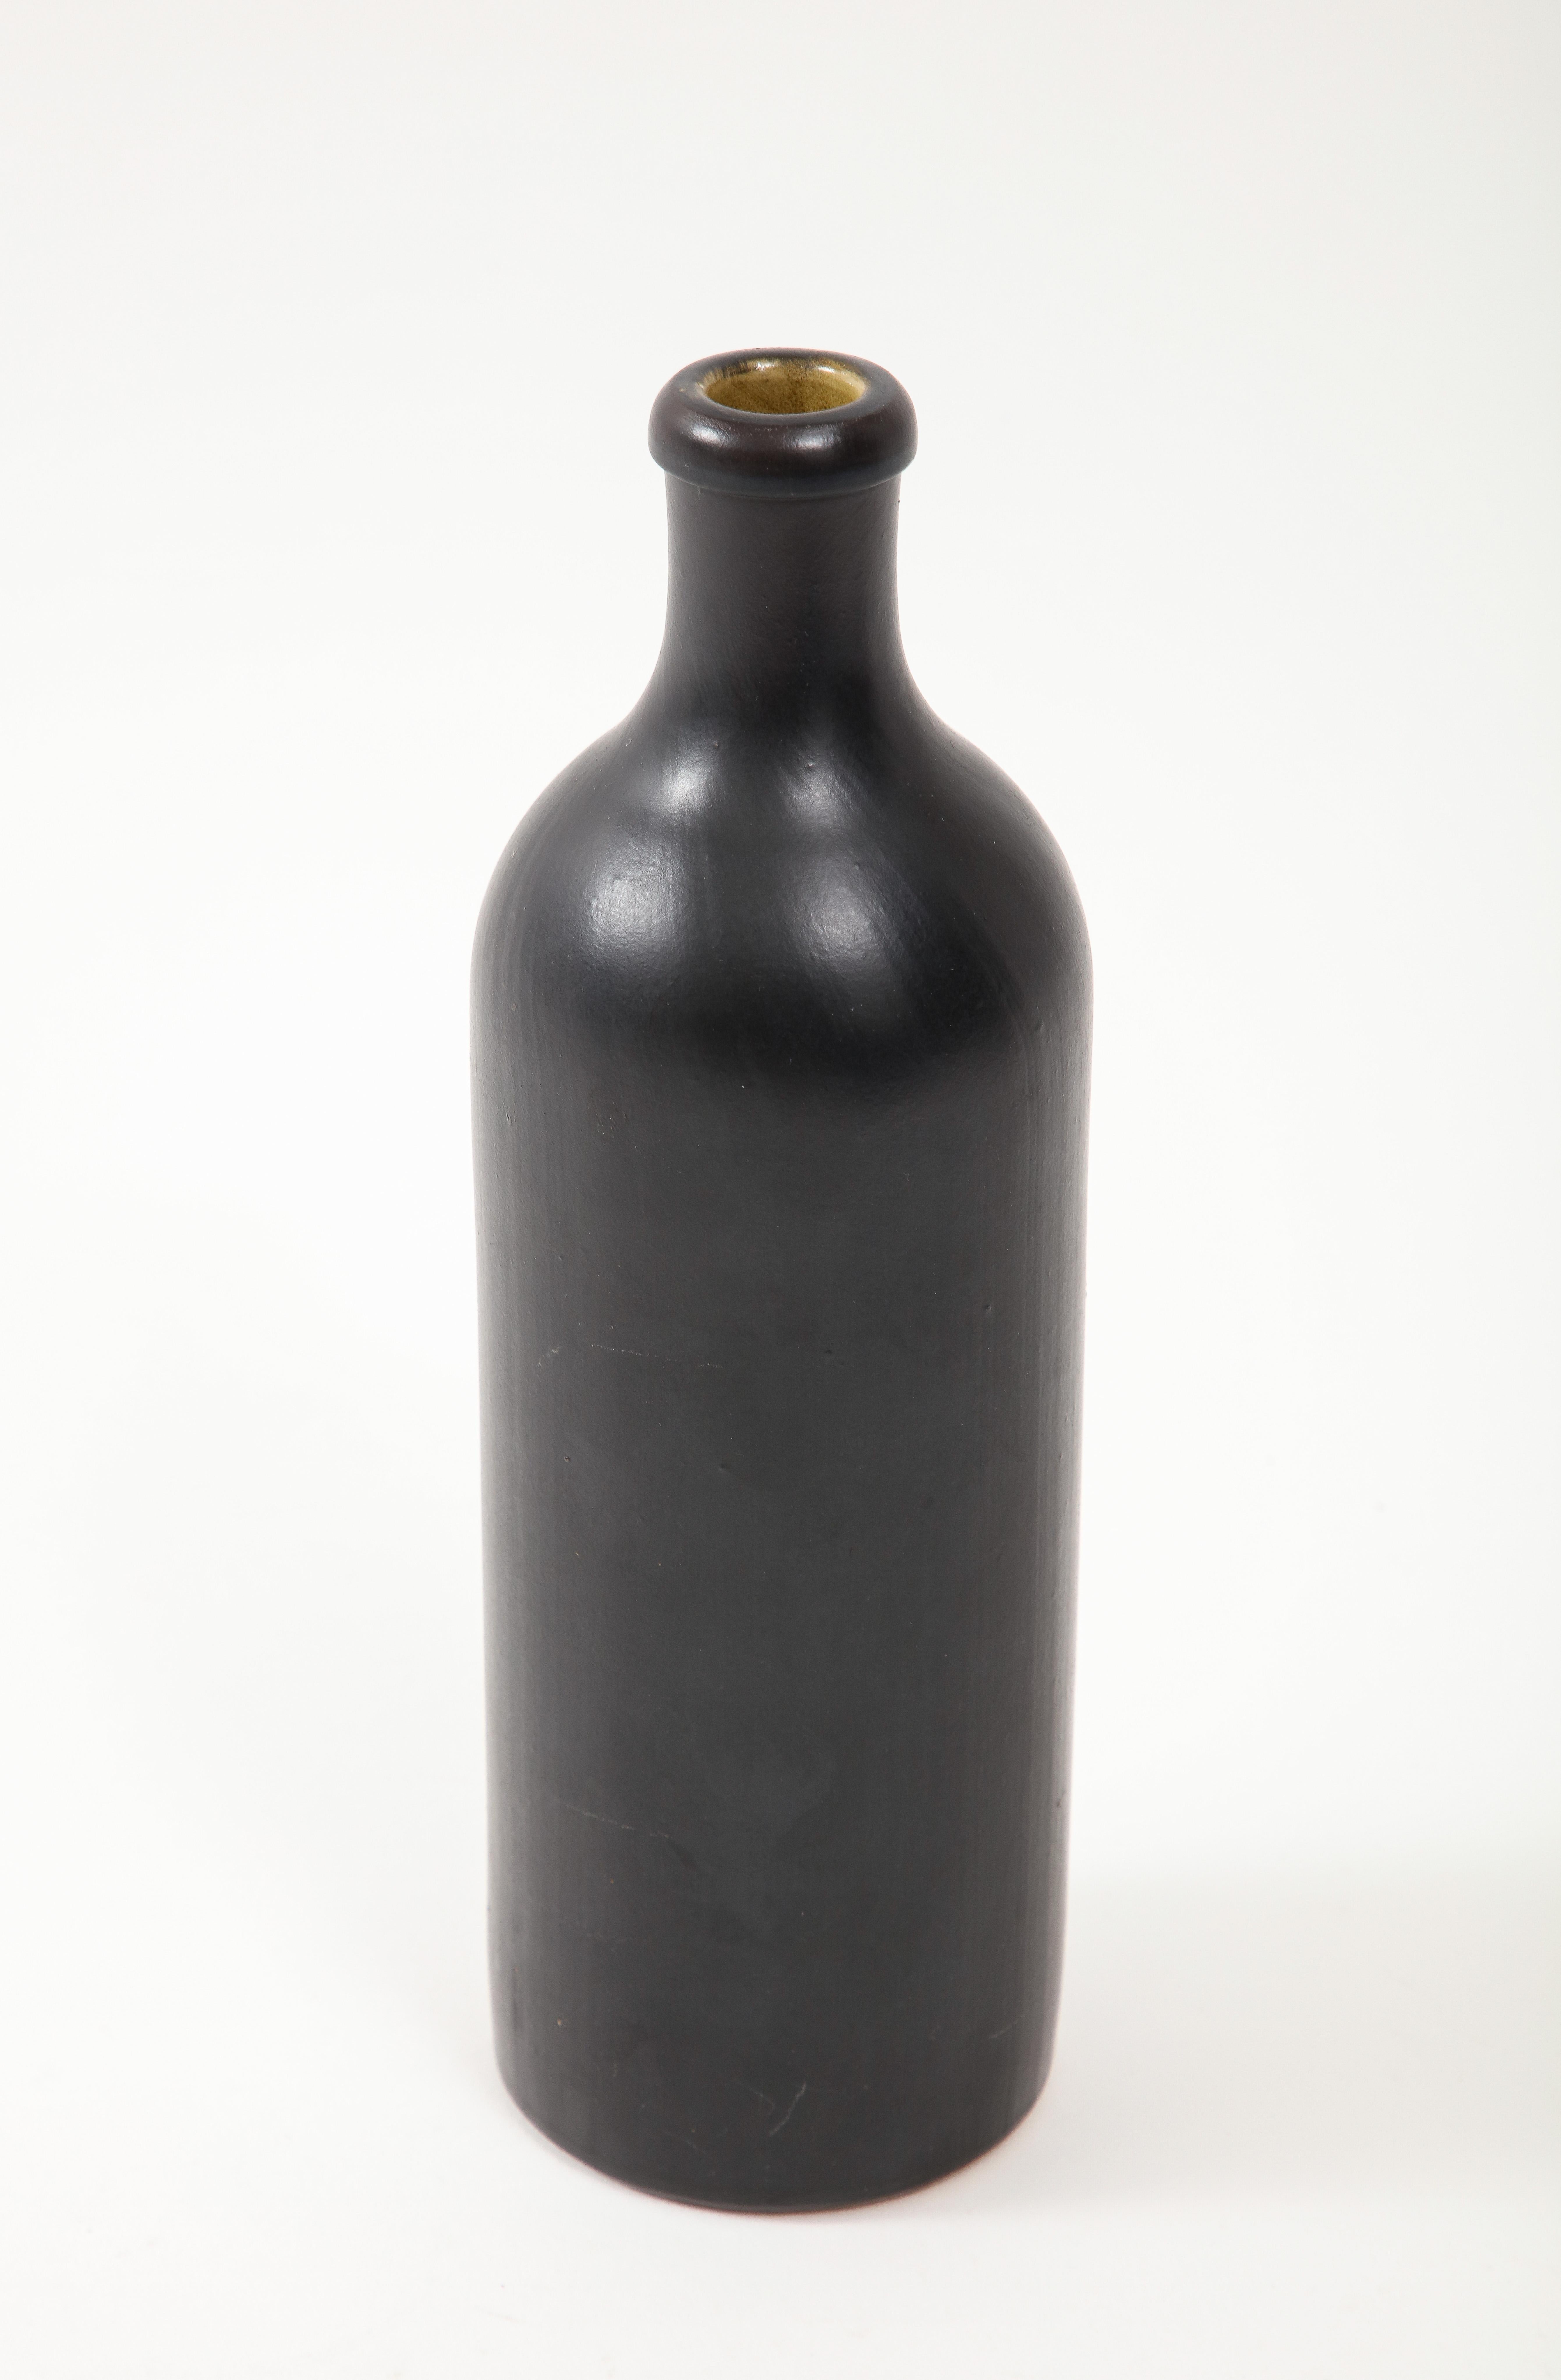 Large Georges Jouve Style Period Black Matte Vase, France, c. 1950 For Sale 2